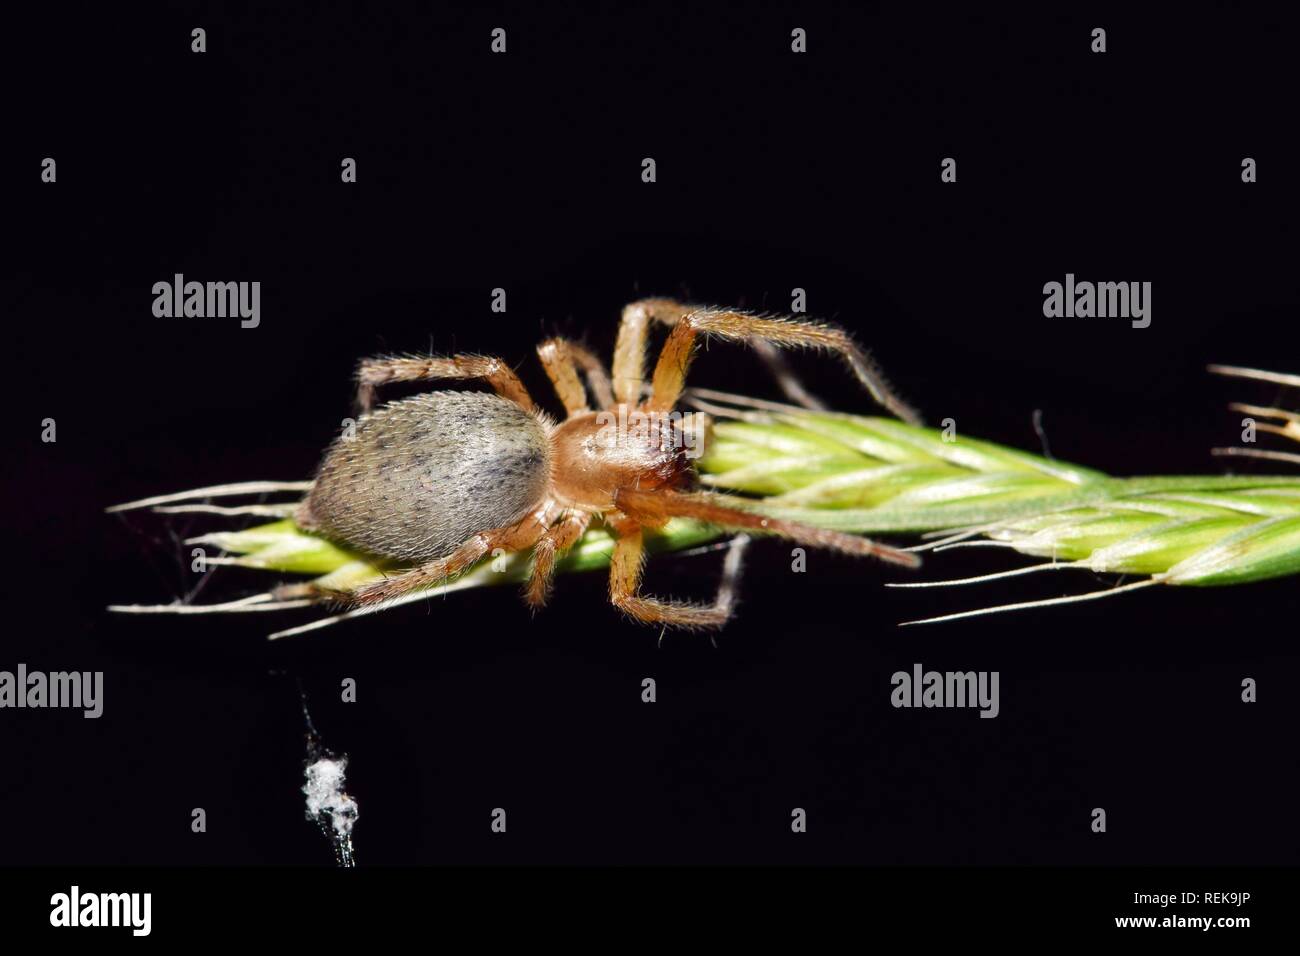 Diese gelbe Sac spider (Cheiracanthium) ist auf die Jagd in der Nacht auf einem grassamen Stiel mit einem schwarzen Hintergrund. Bild in Houston, TX. Stockfoto